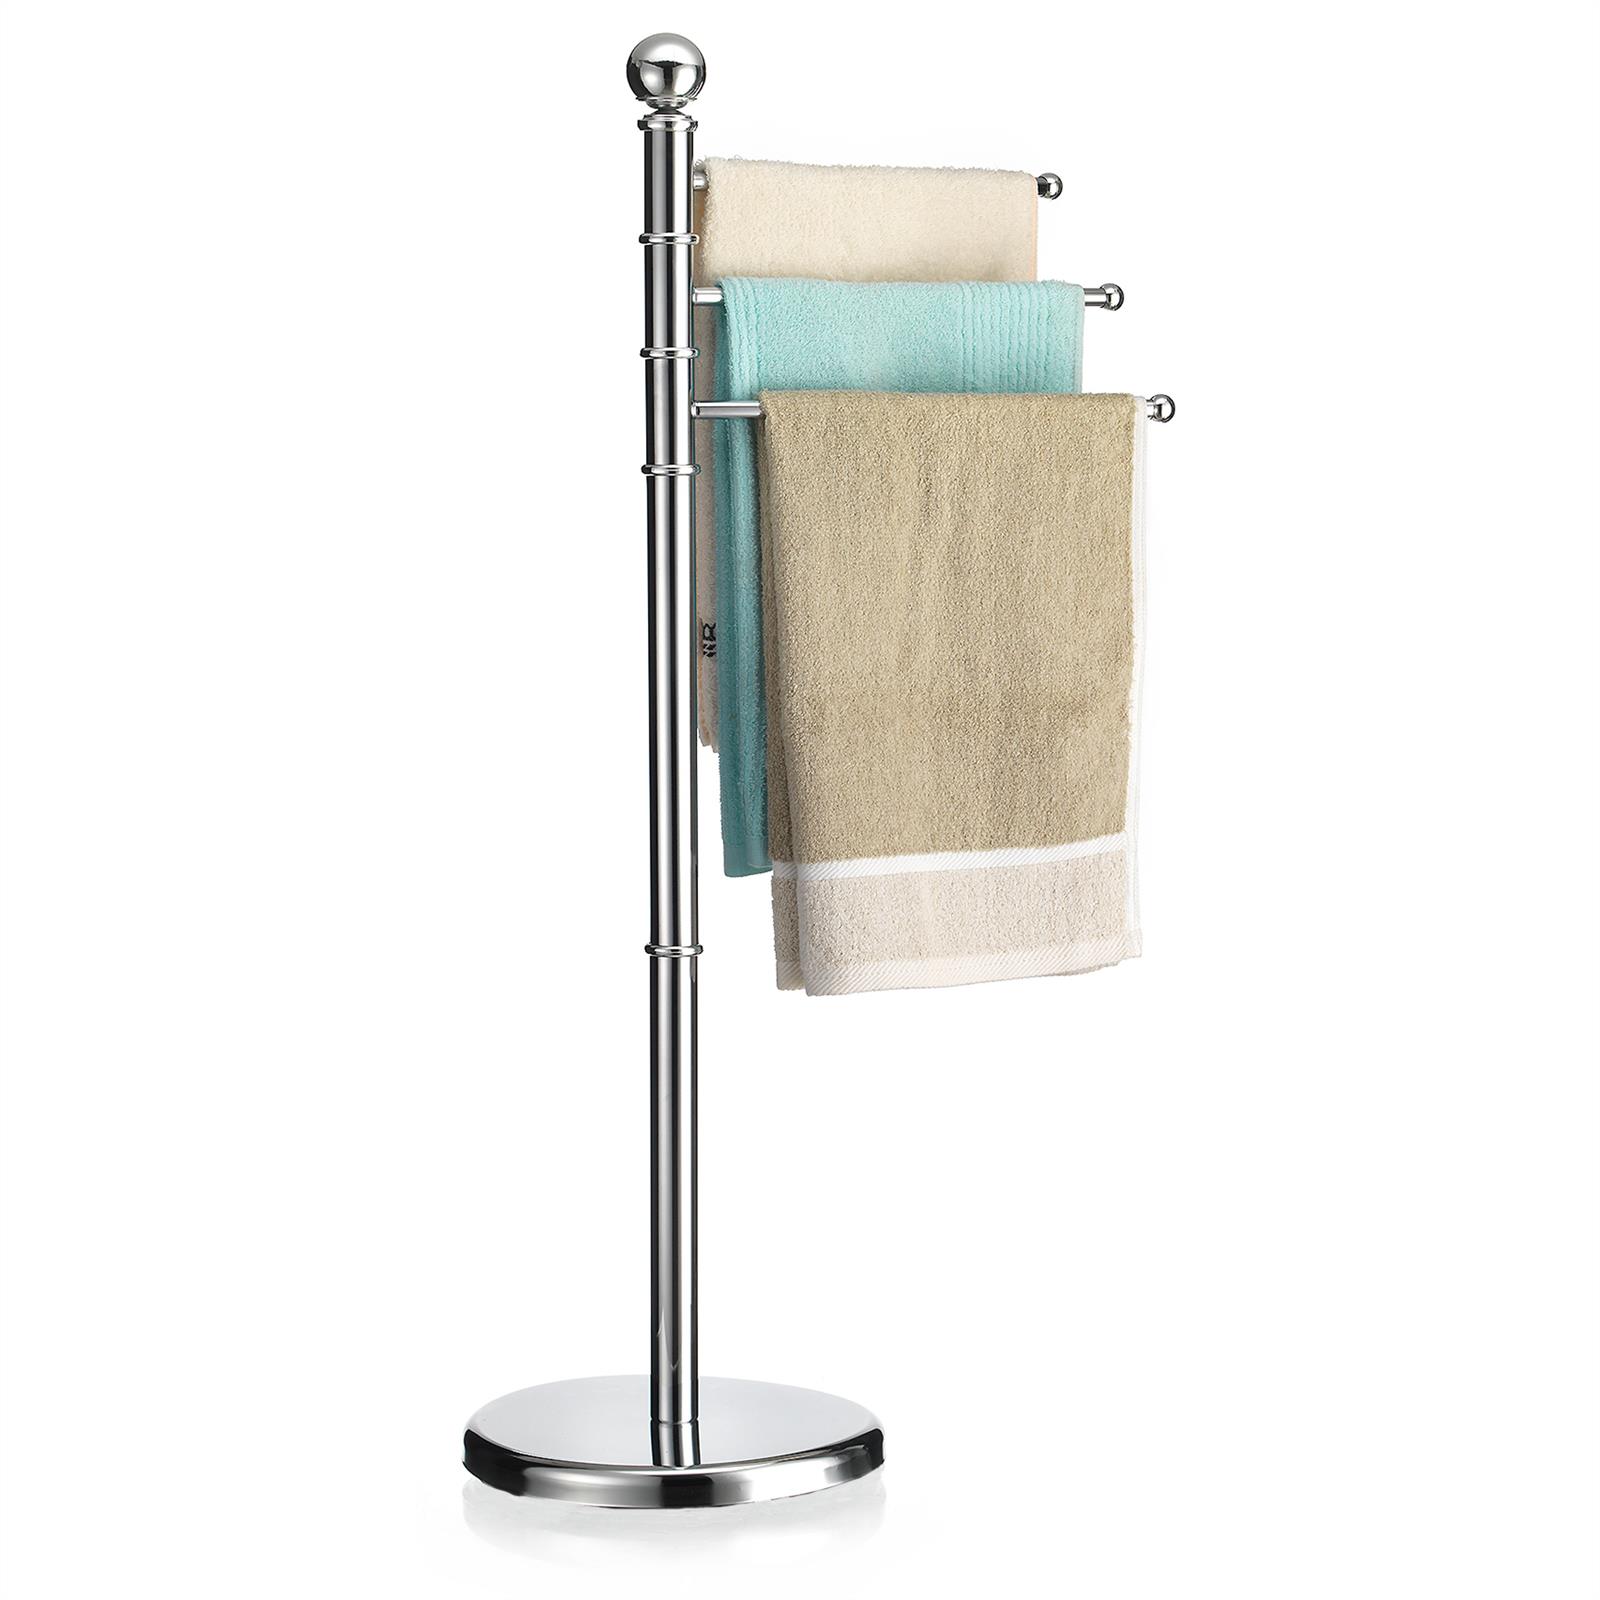 Handtuchhalter Handtuchständer Badetuch Stand Halter Design 3 bewegliche Arme